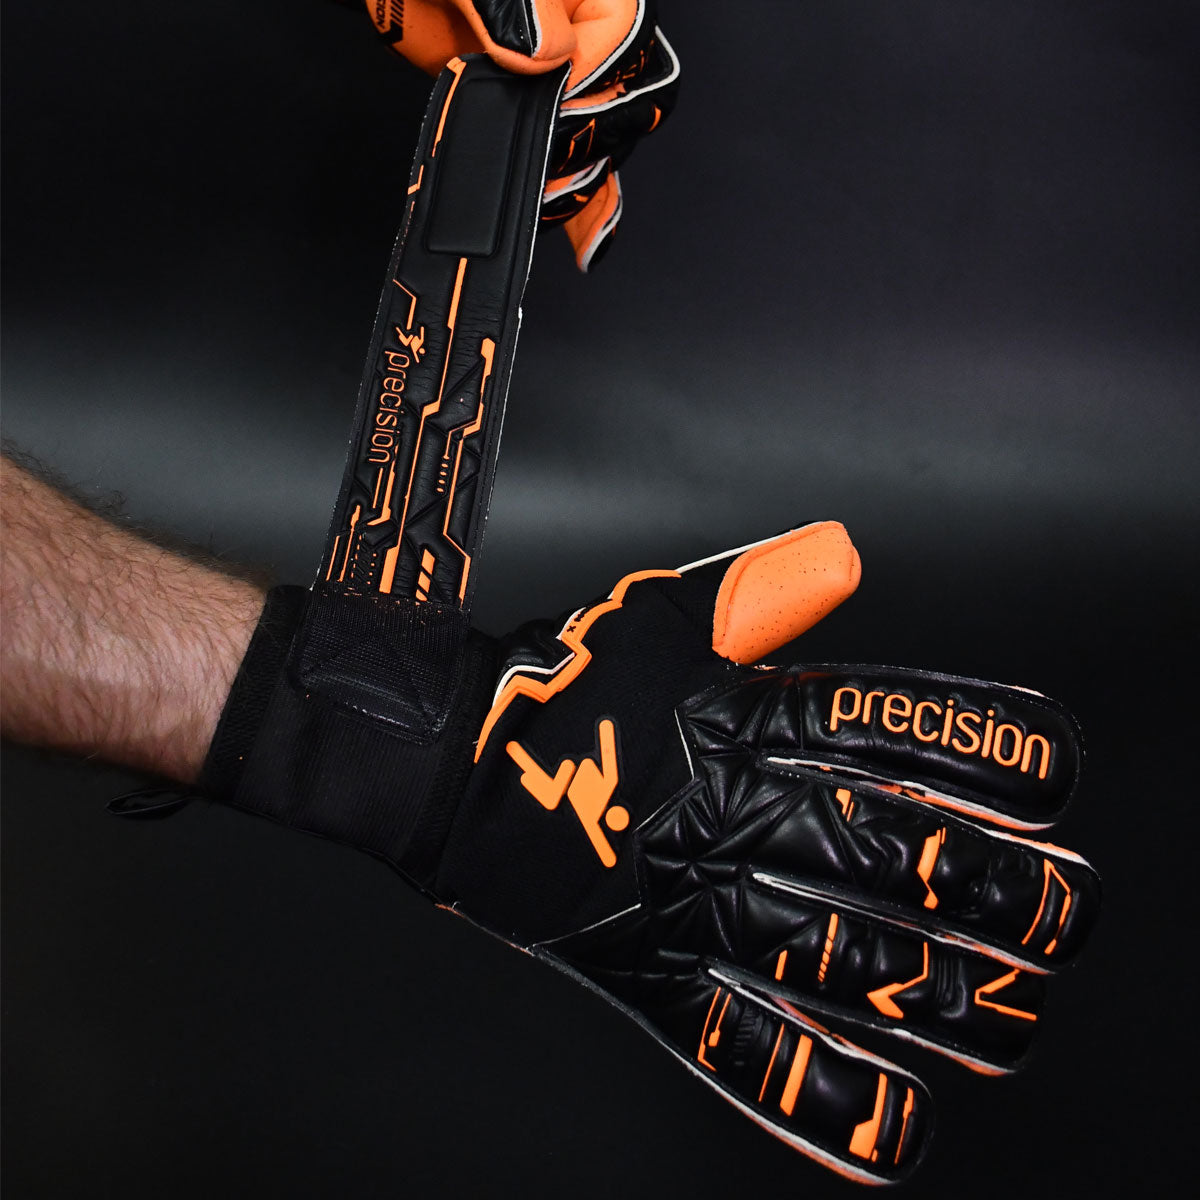 Precision Training Fusion X Pro Surround Quartz Goalkeeper Gloves - Adult - Black/Orange